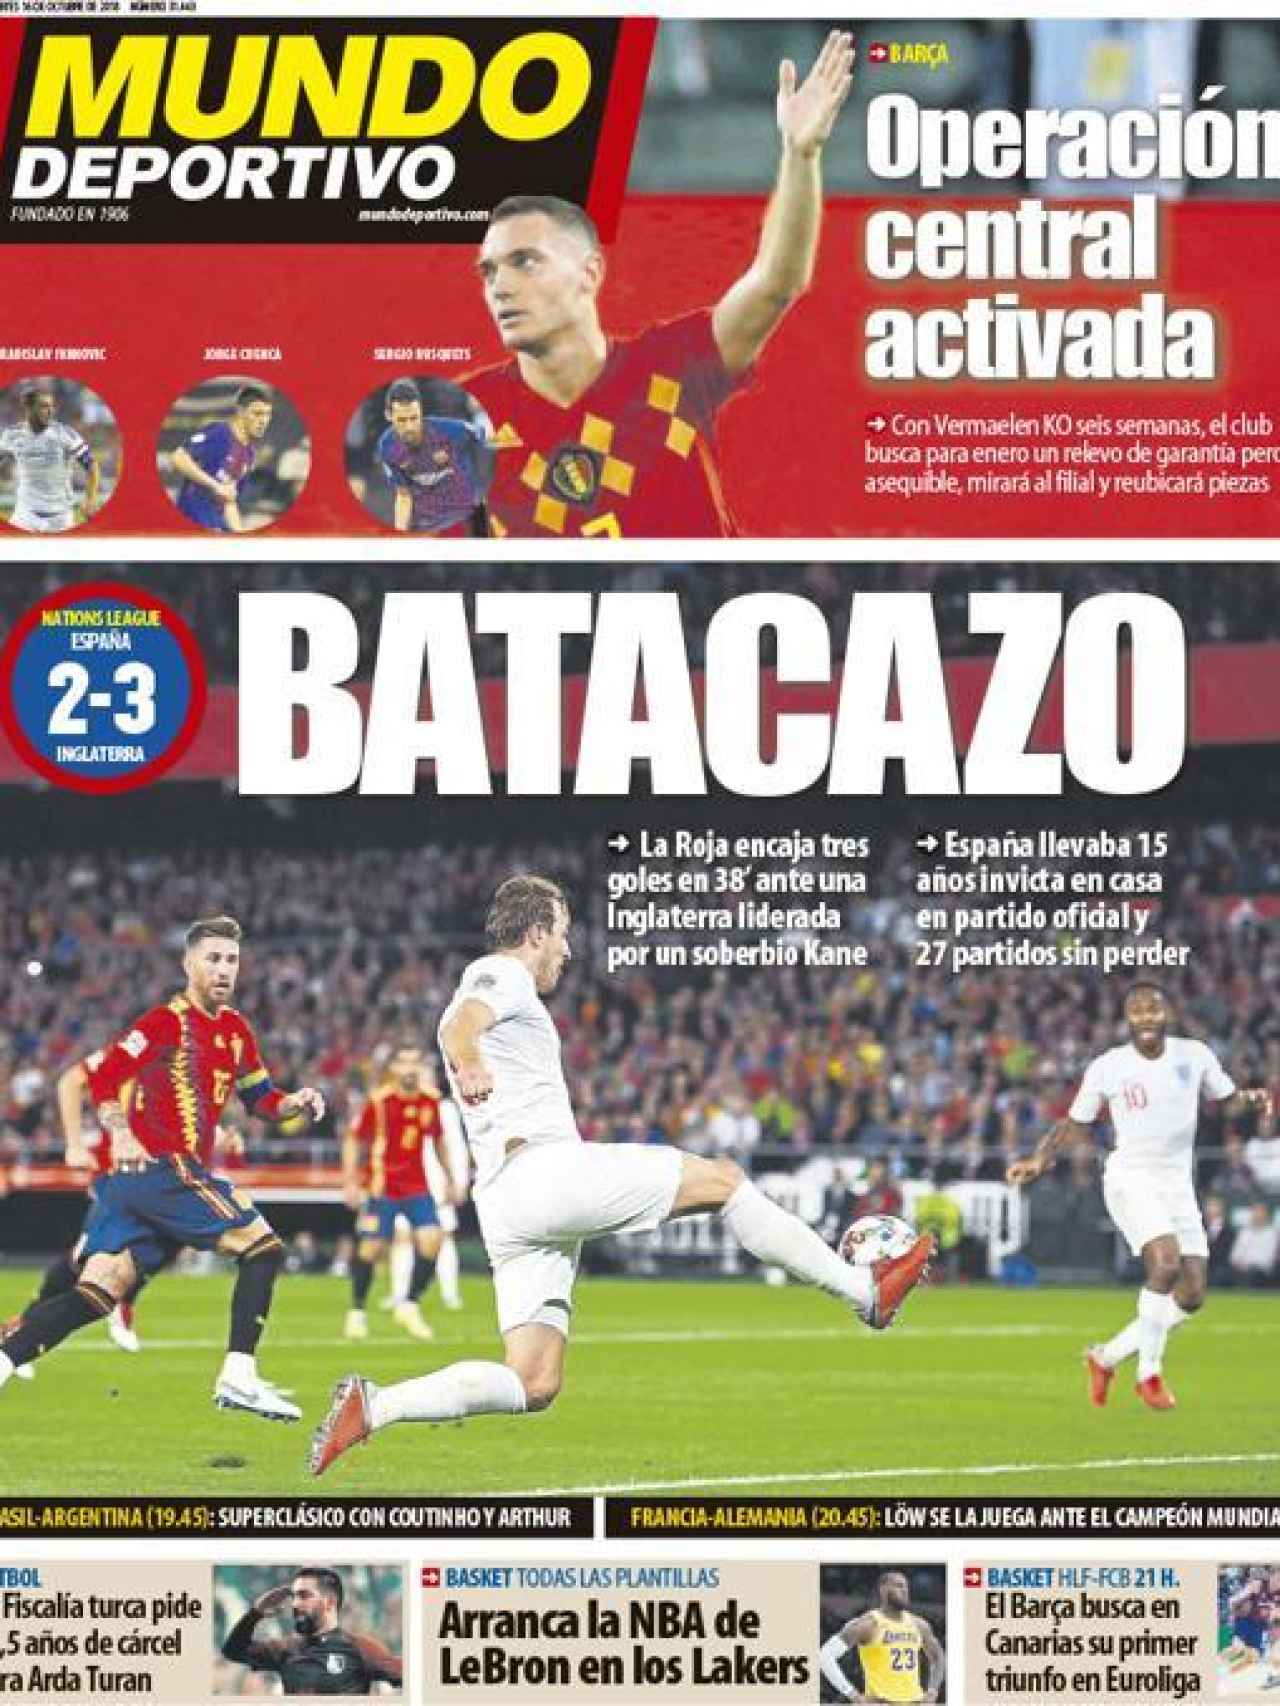 La portada del diario Mundo Deportivo (16/10/2018)